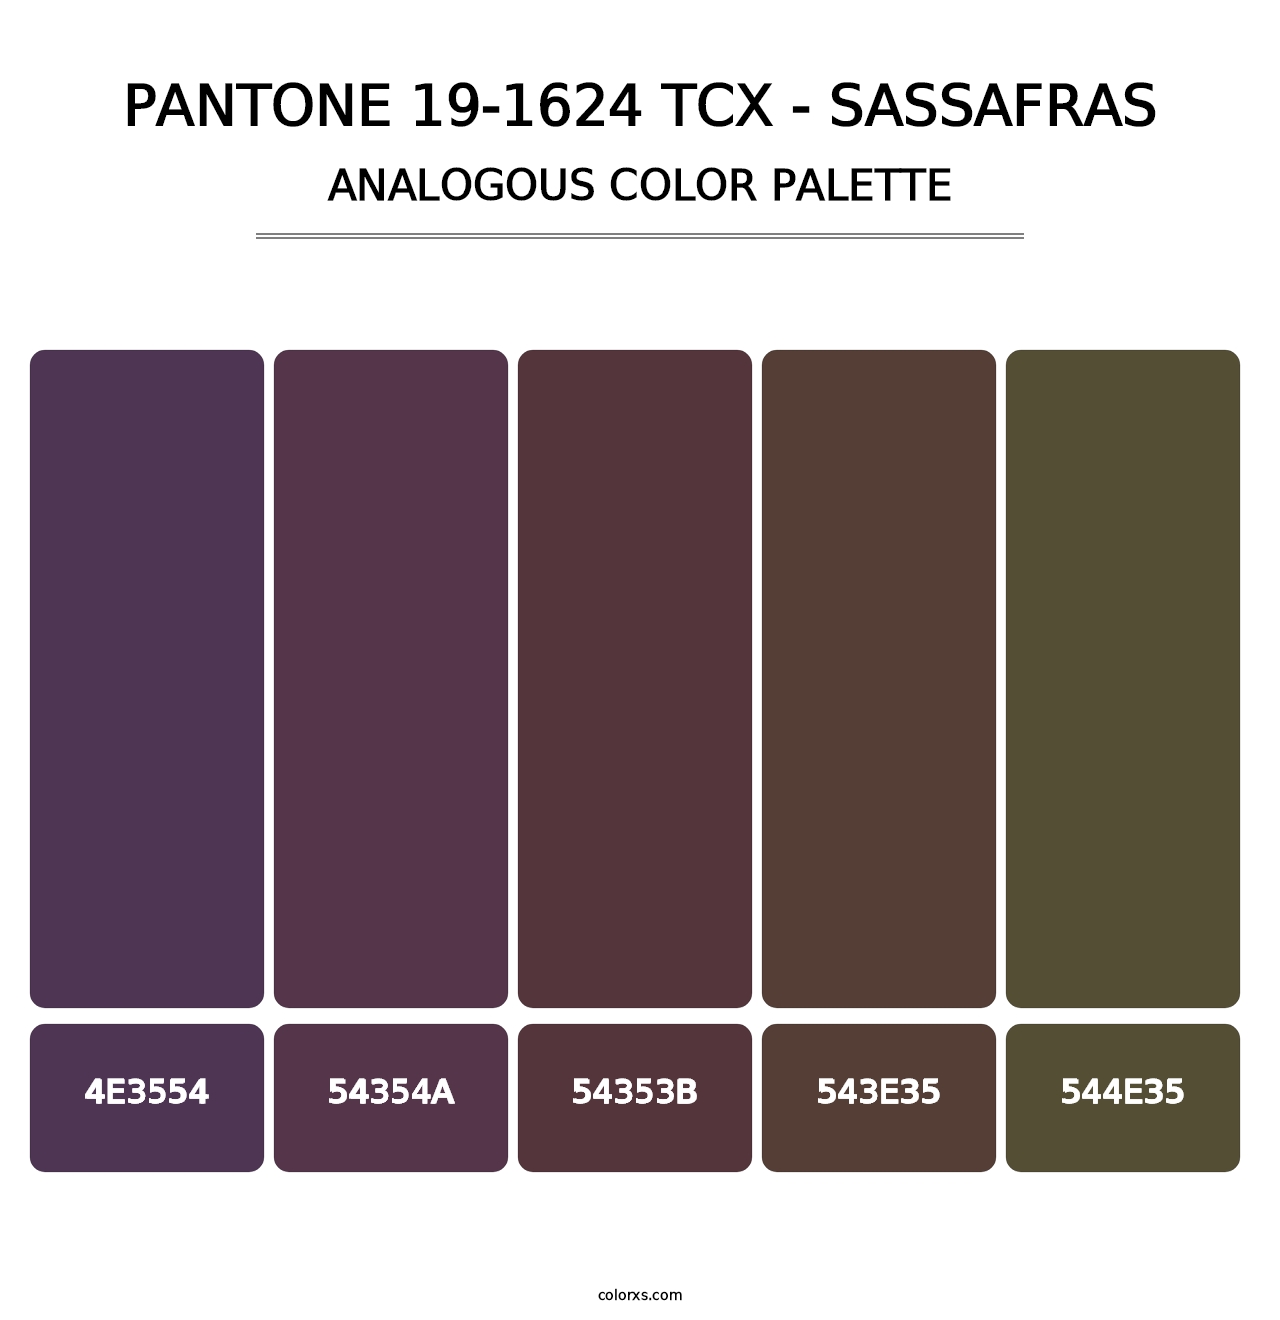 PANTONE 19-1624 TCX - Sassafras - Analogous Color Palette